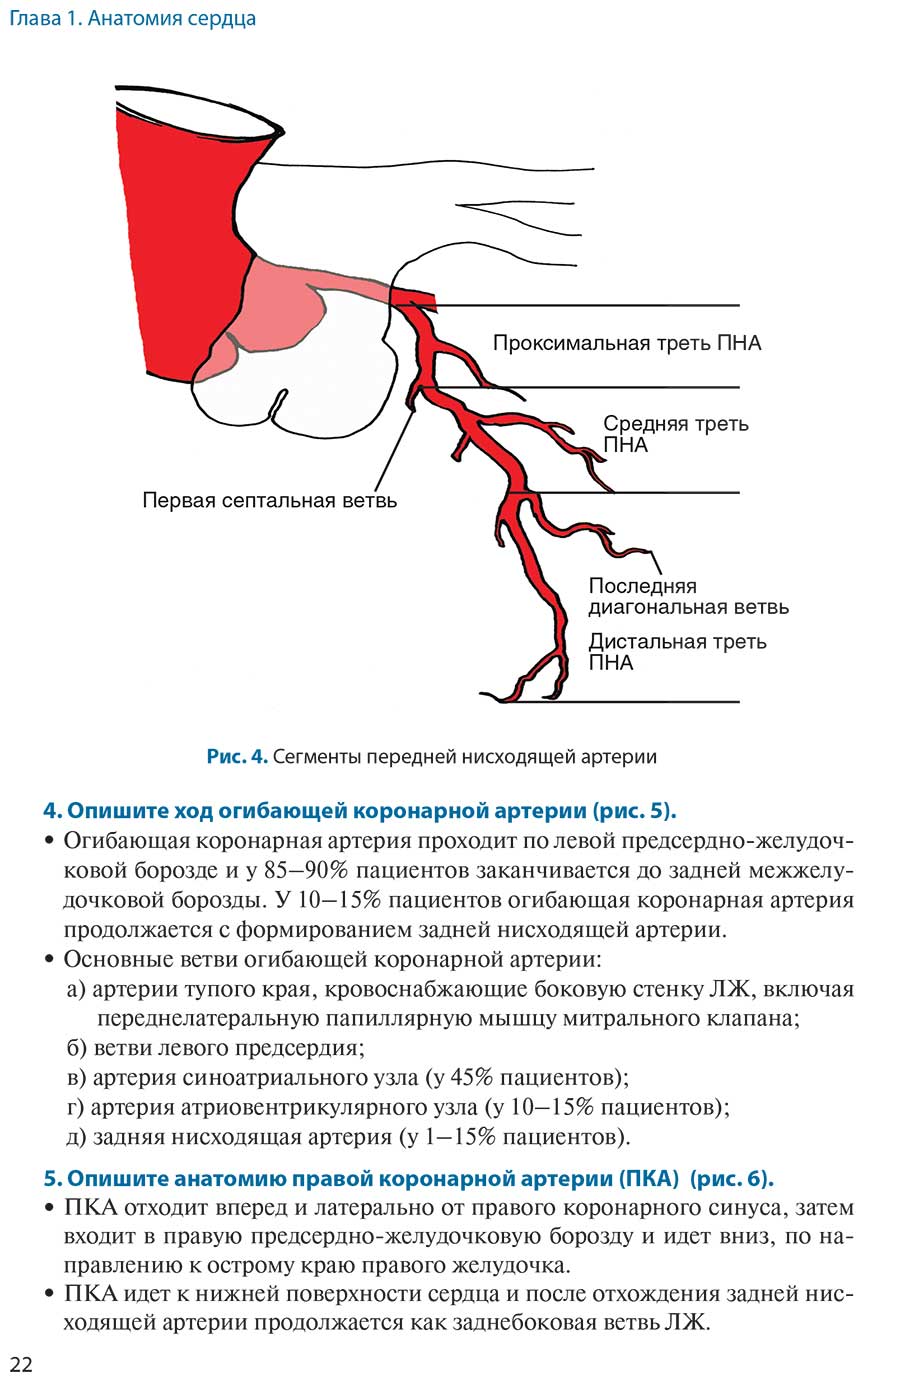 Рис. 4. Сегменты передней нисходящей артерии